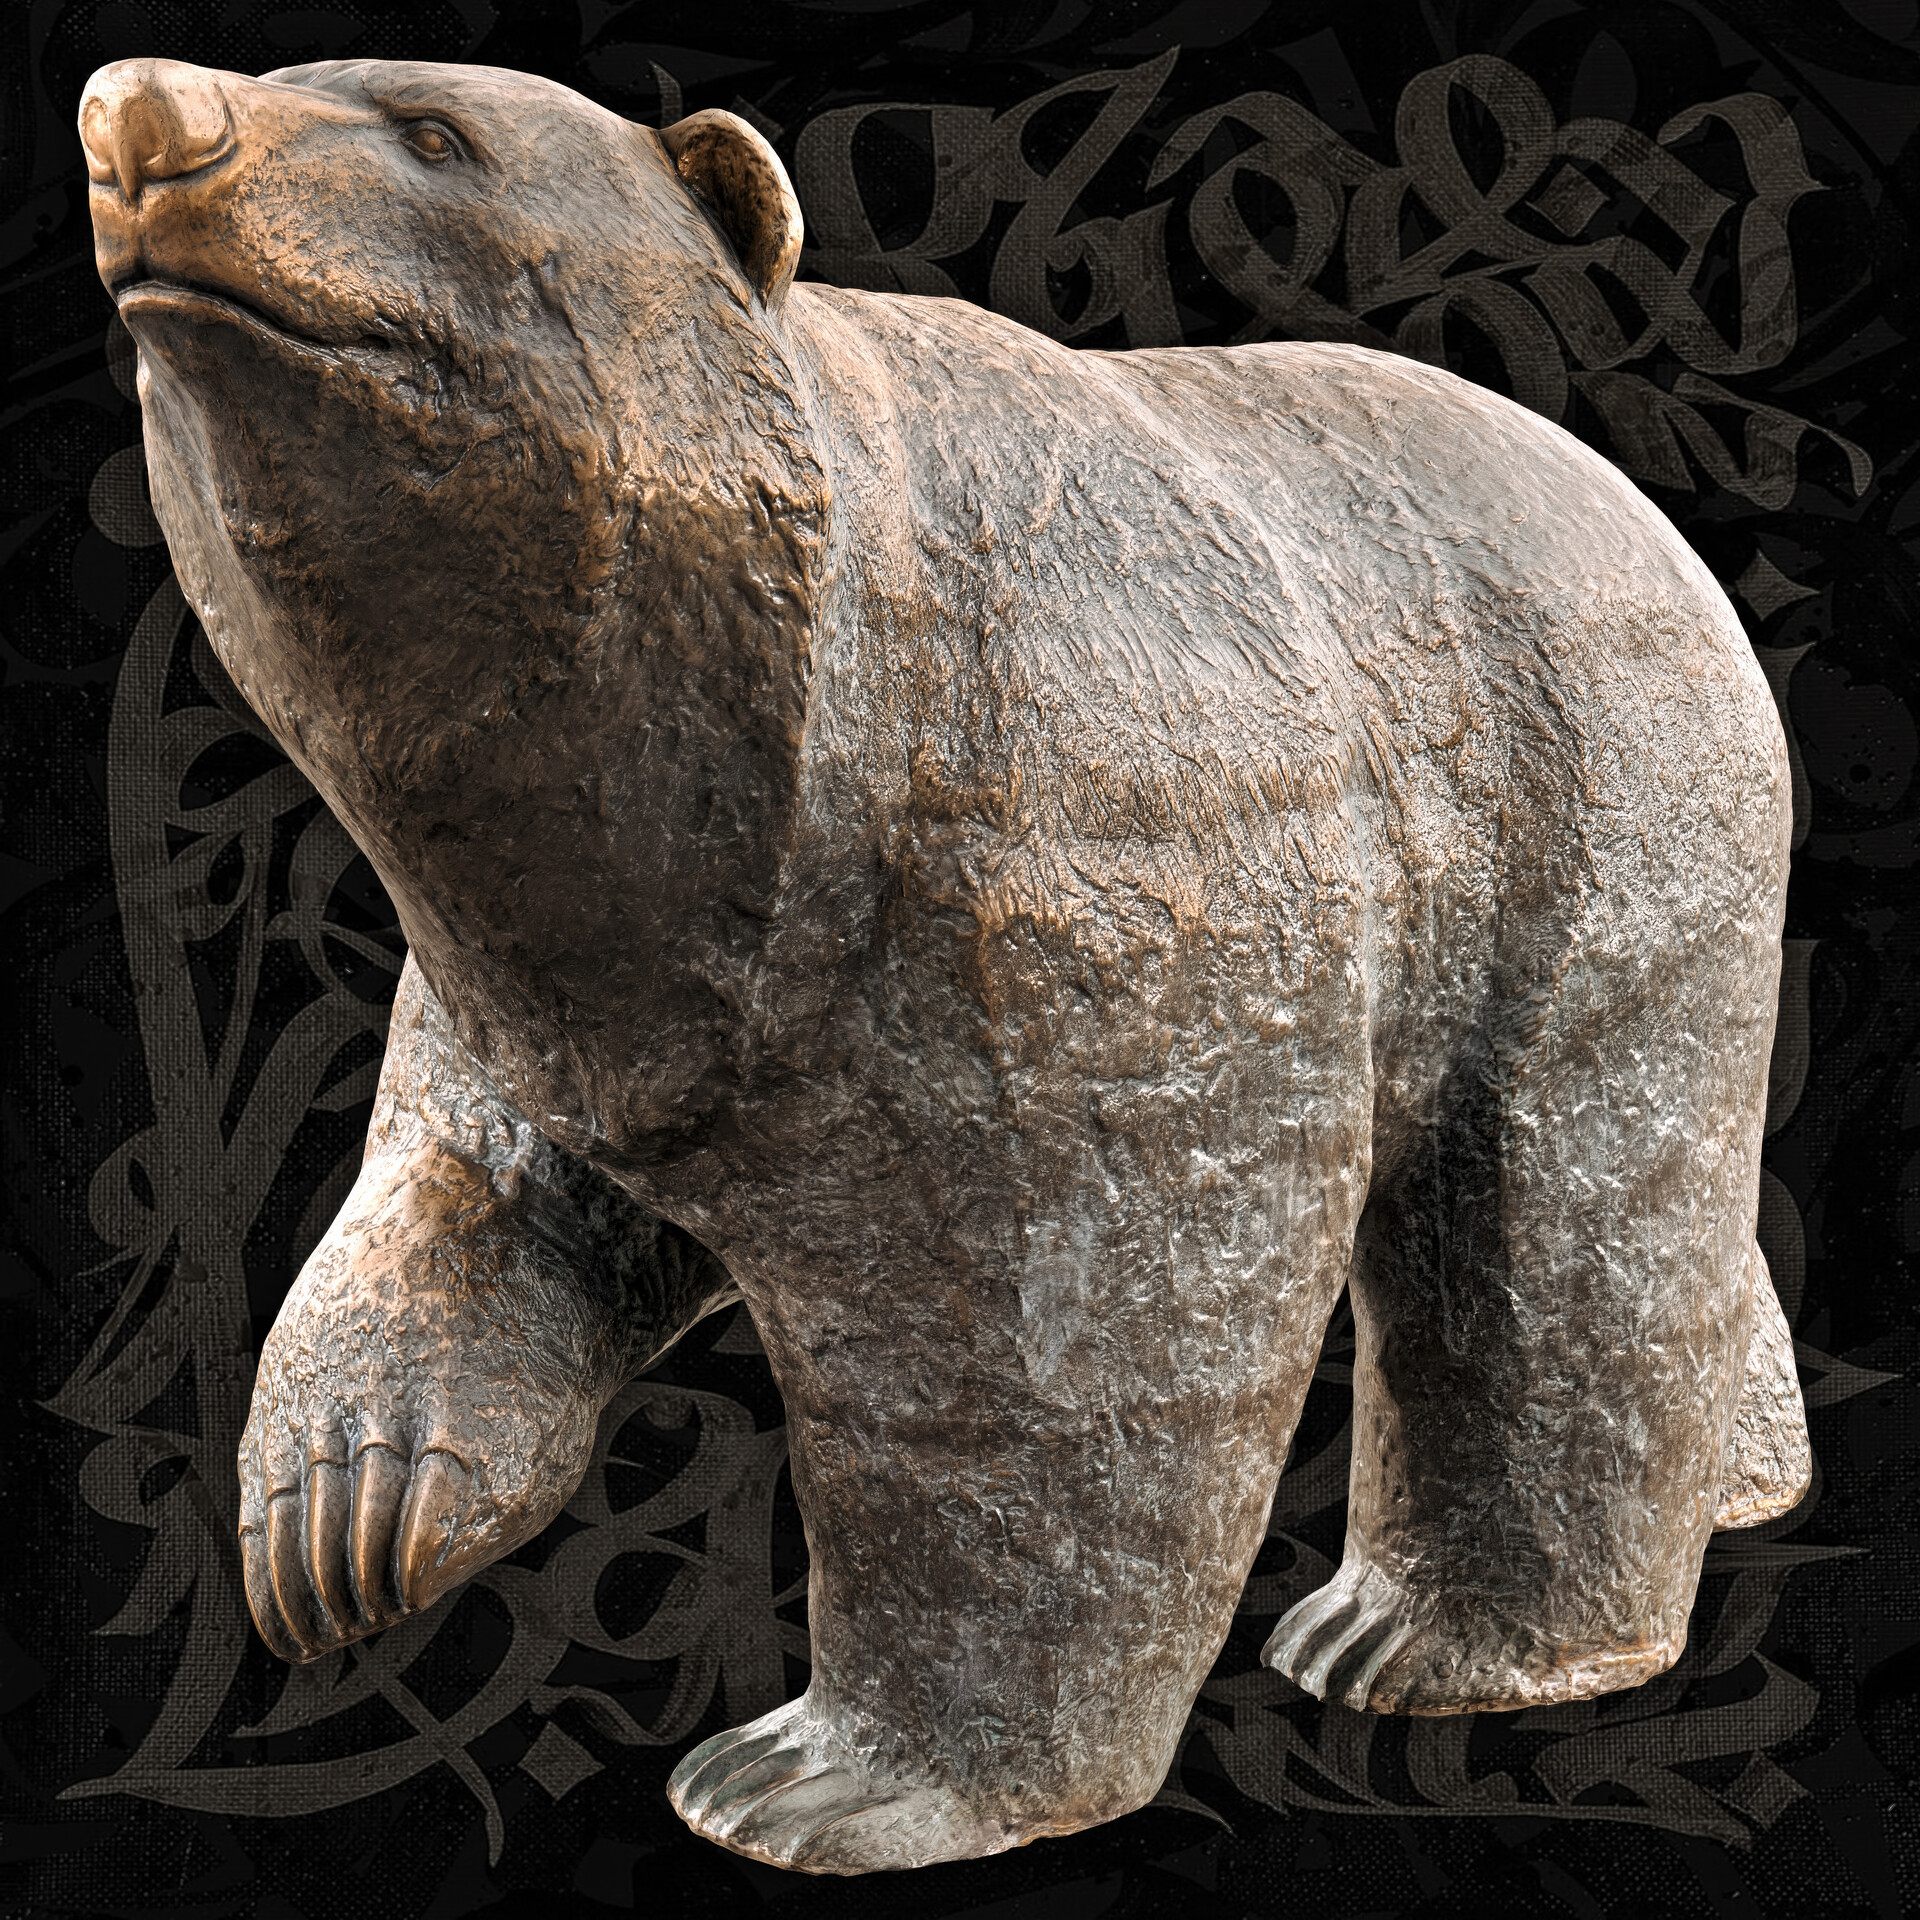 ArtStation - Bear Sculpt in Blender